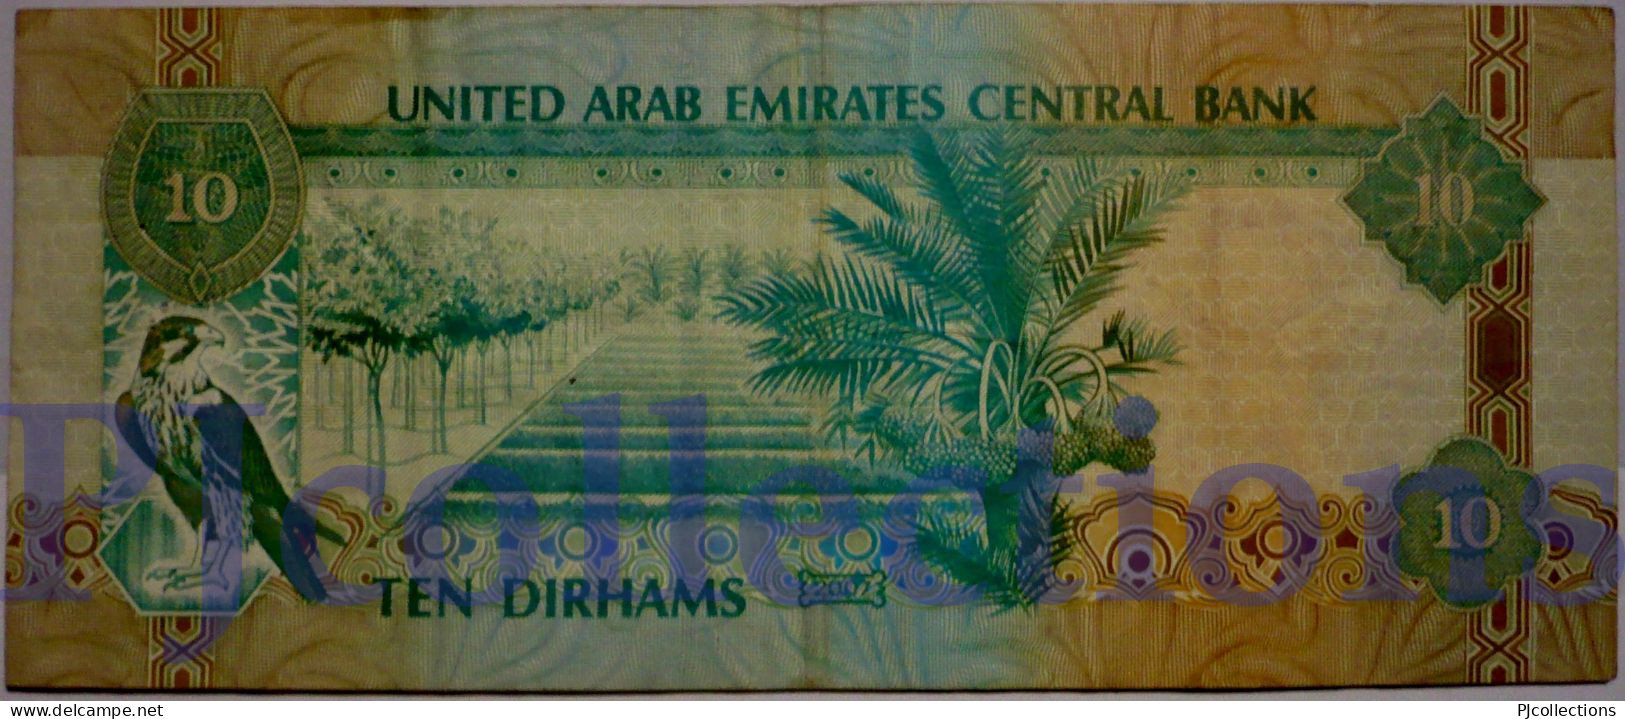 UNITED ARAB EMIRATES 10 DIRHAMS 2007 PICK 20d VF - Emiratos Arabes Unidos